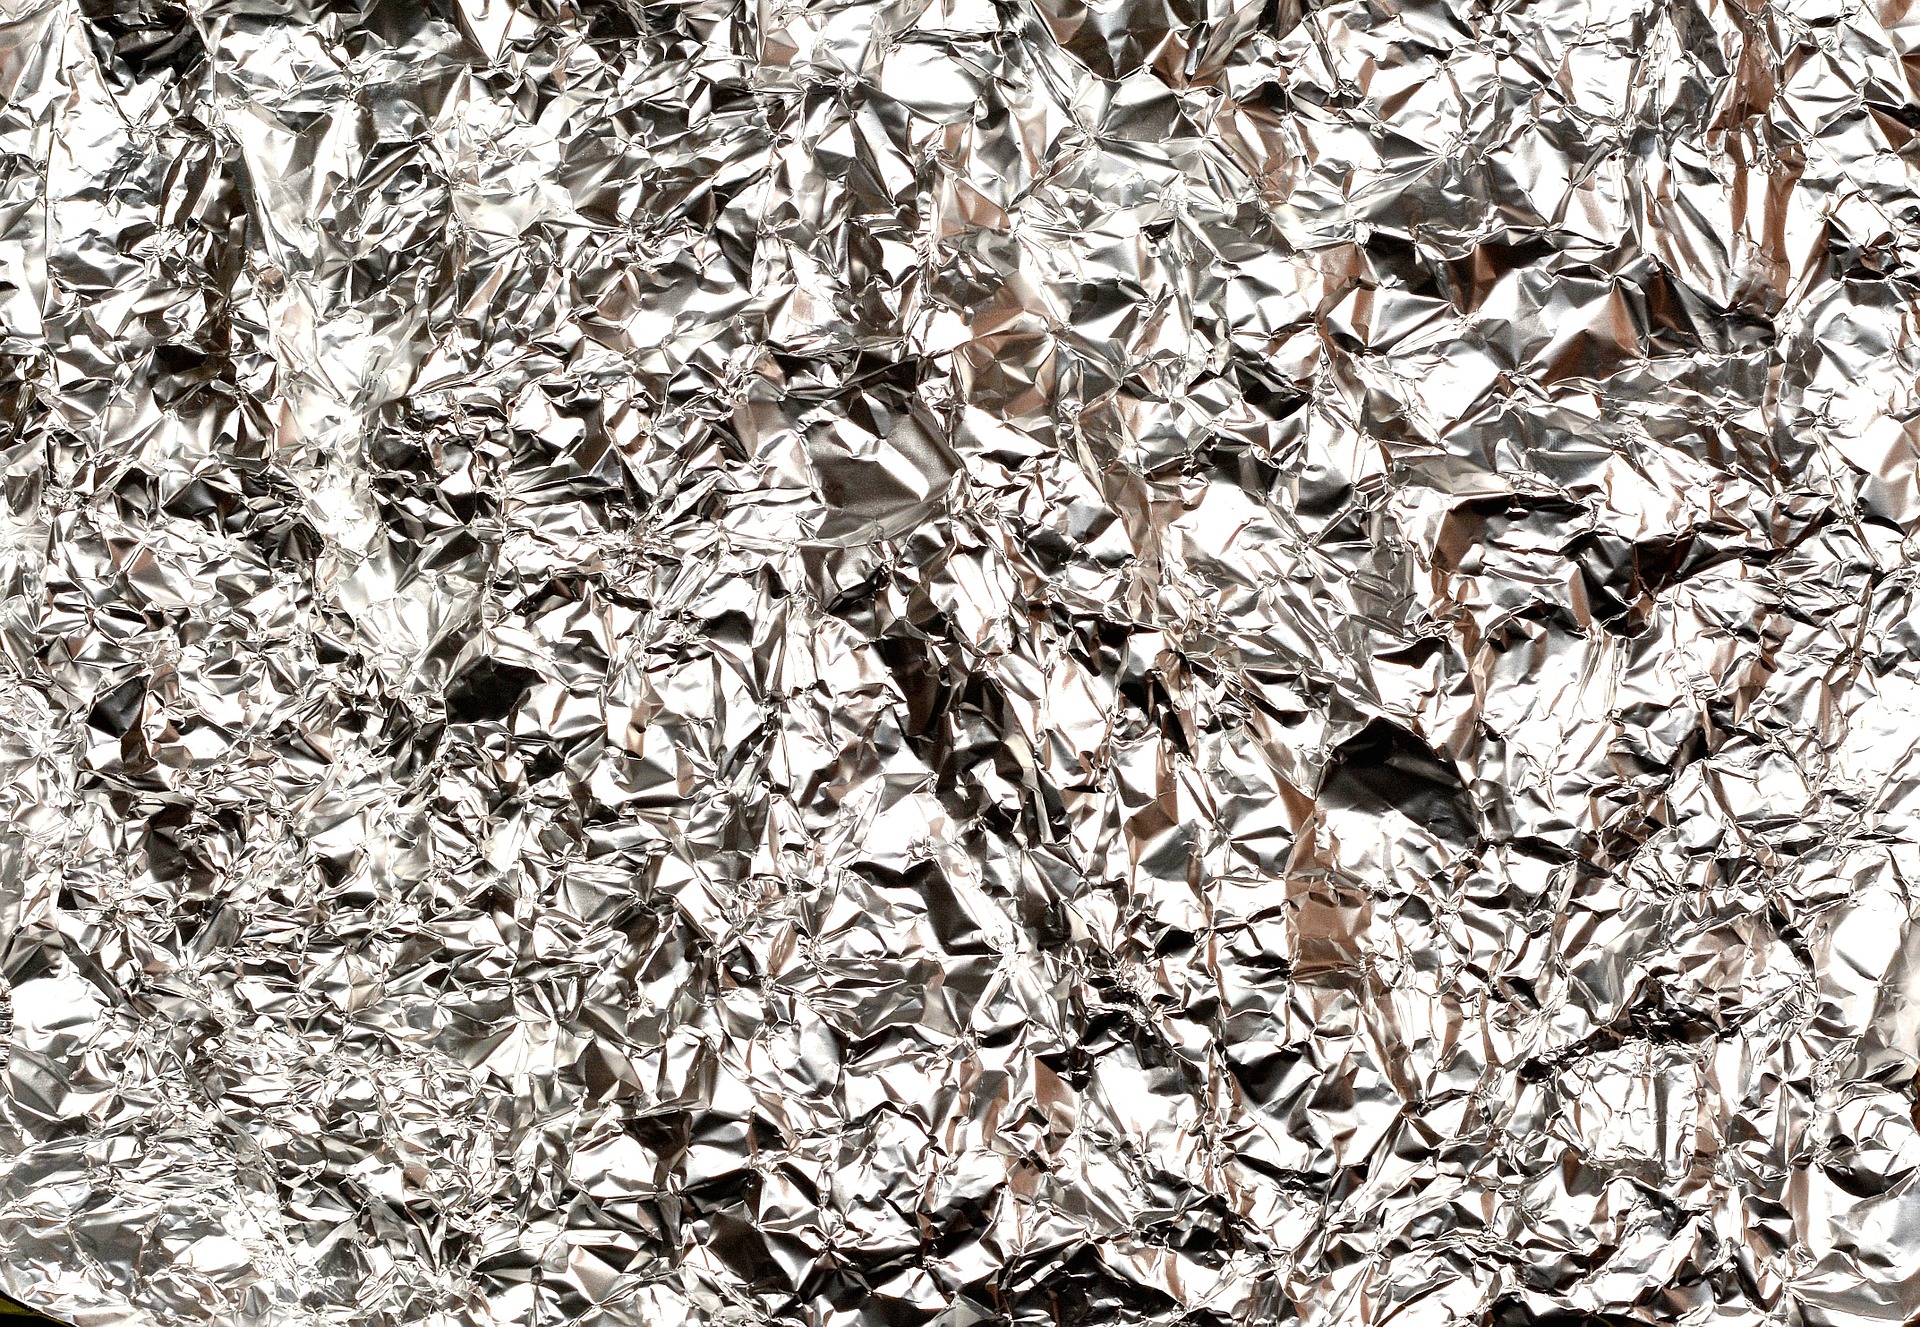 Aluminum Foil 647228 1920 (1)